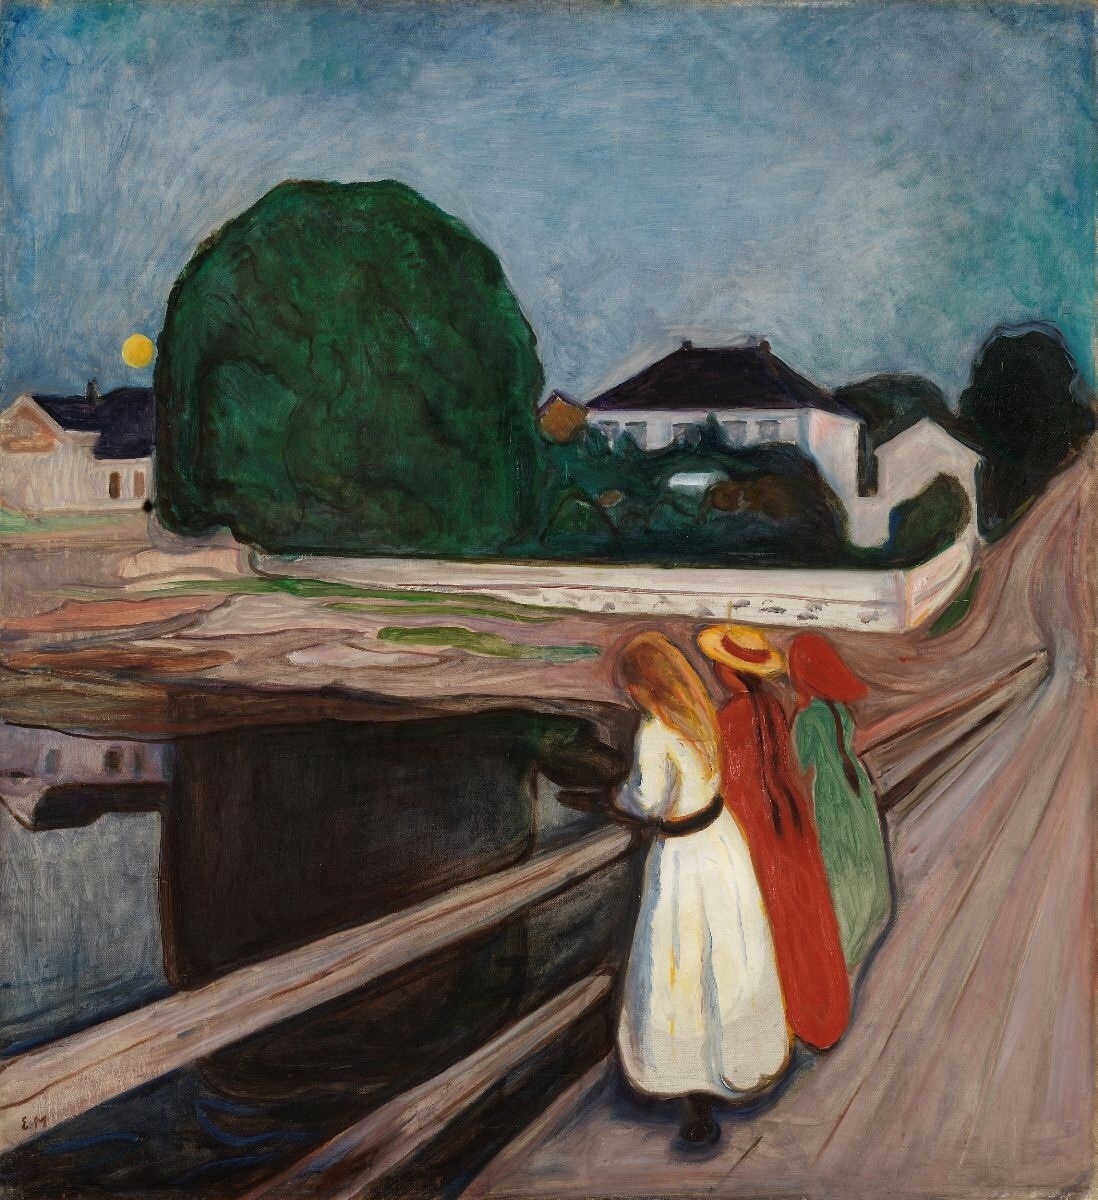 Pintada em 1902 com cores vivas e retratando uma cena ao ar livre - ao contrário de muitos de seus trabalhos anteriores -, muitos consideram essa obra uma das maiores de Munch, por isso seu alto preço a recomenda como uma das pinturas mais caras do mundo já vendidas em 2024.